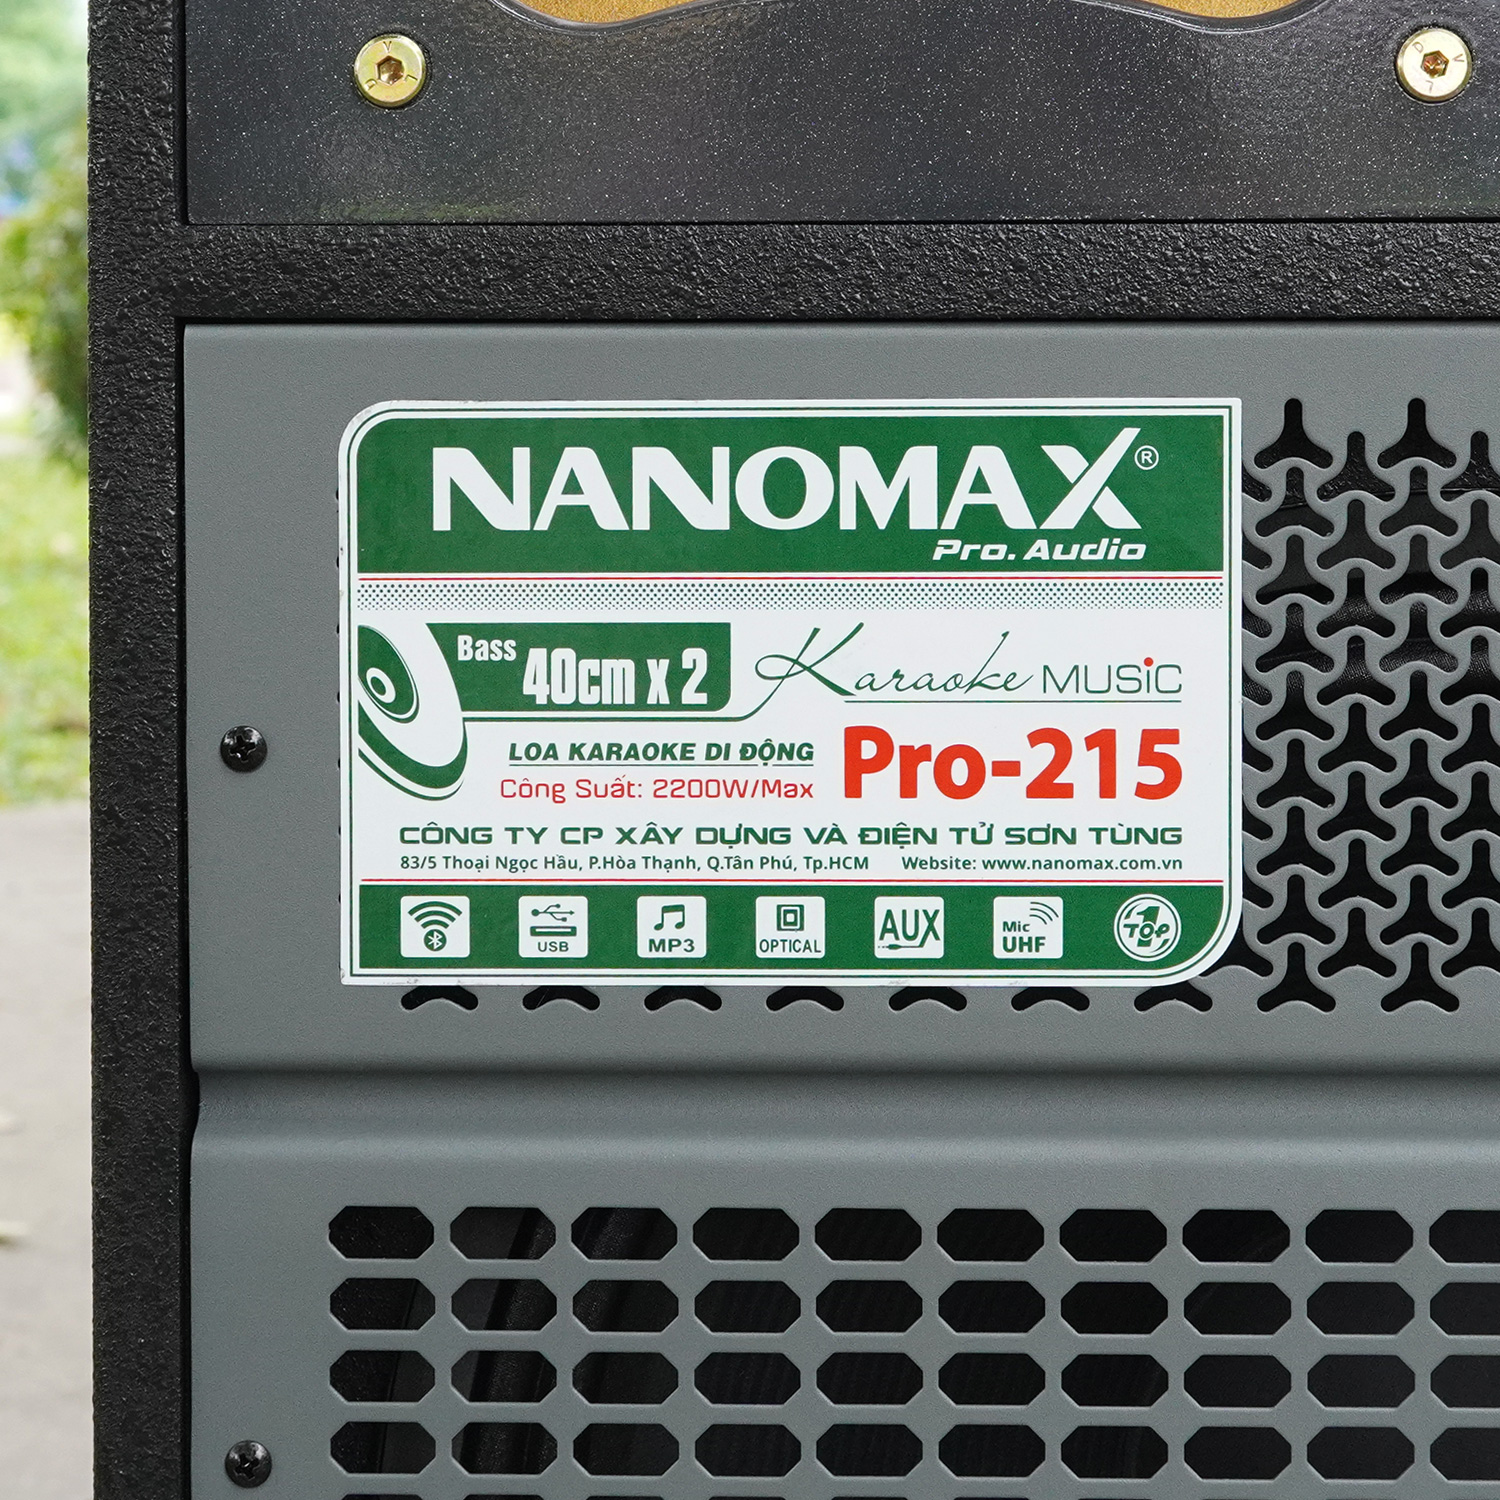 Loa Kéo Bình Bass Đôi Nanomax Pro-215 2200w Bass 40cm x2 Karaoke Bluetooth Hàng Chính Hãng